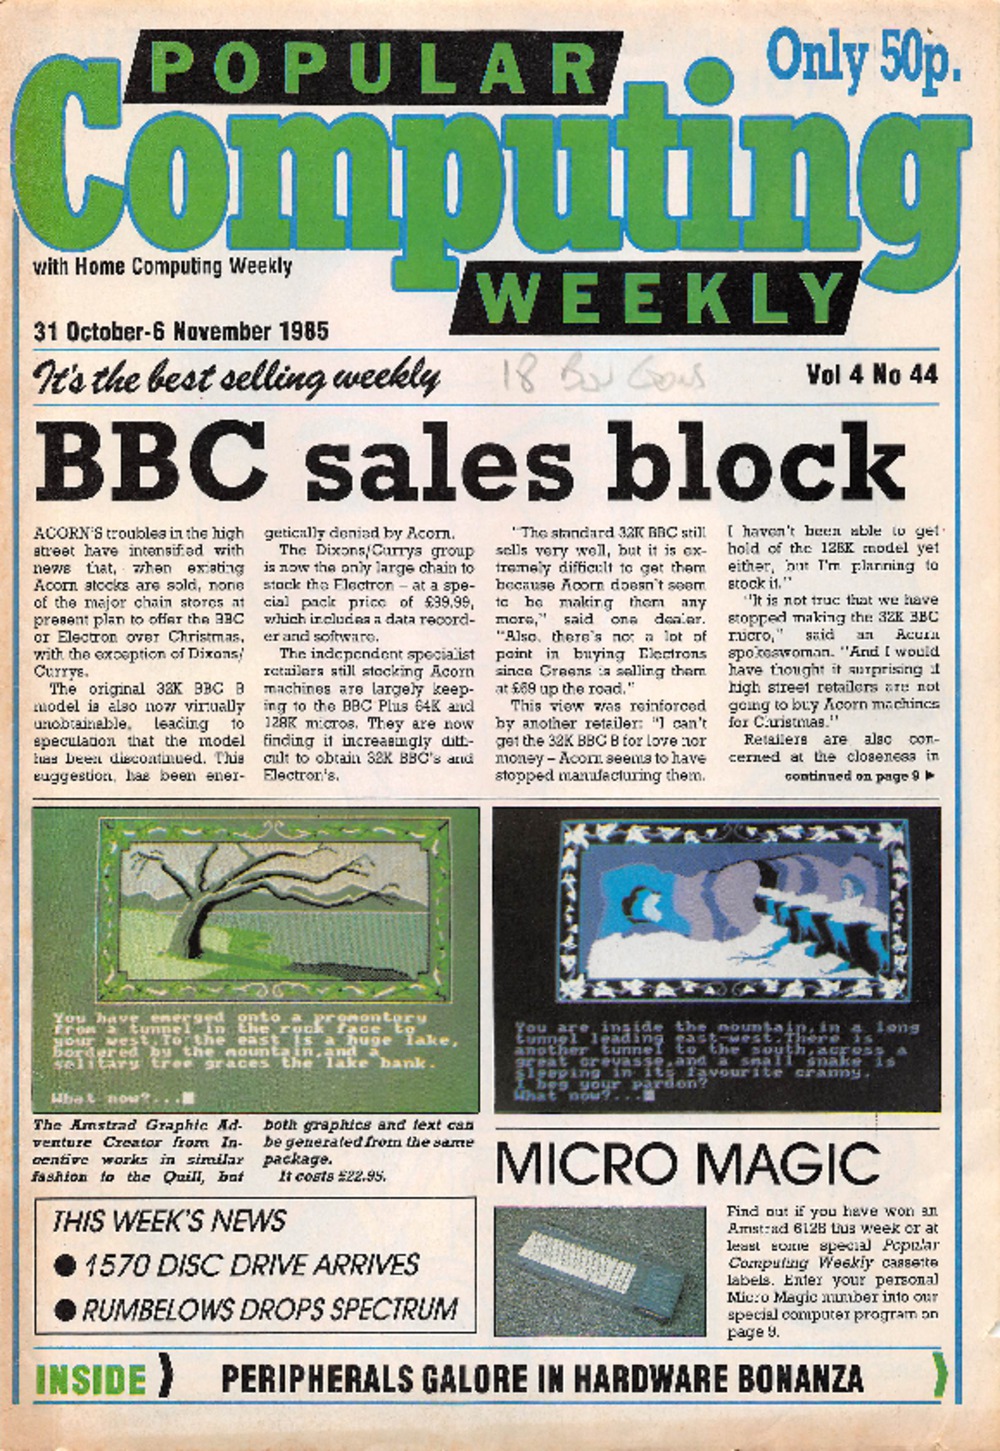 Article: Popular Computing Weekly Vol 4 No 44 - 31 October - 6 November 1985